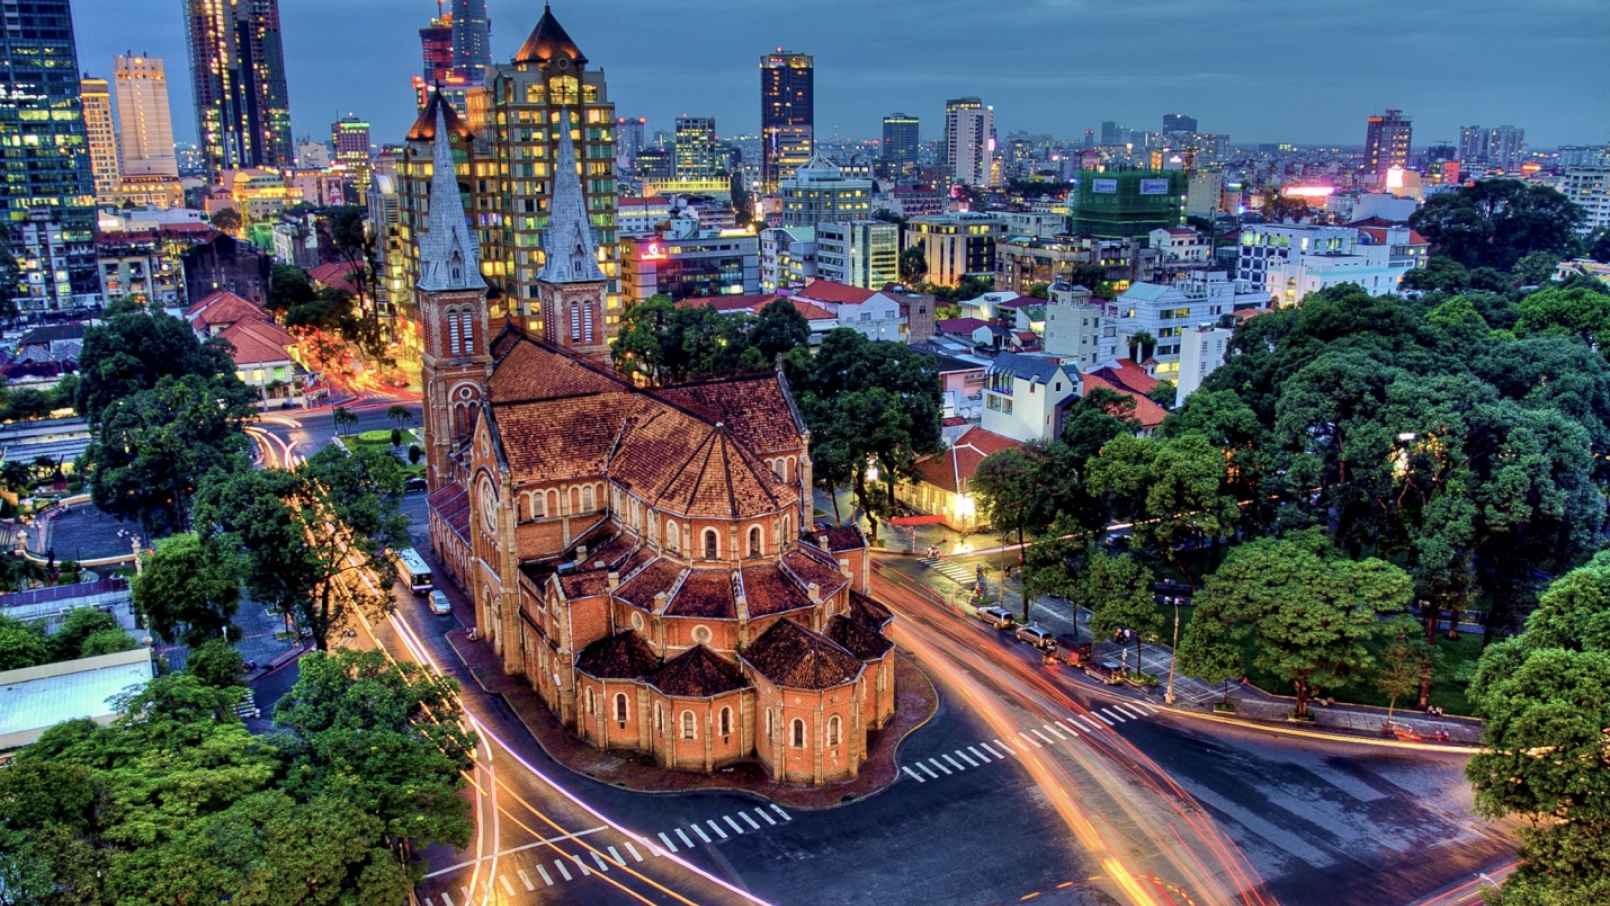 Du lịch Sài Gòn mùa nào đẹp? Bạn đã biết chưa?